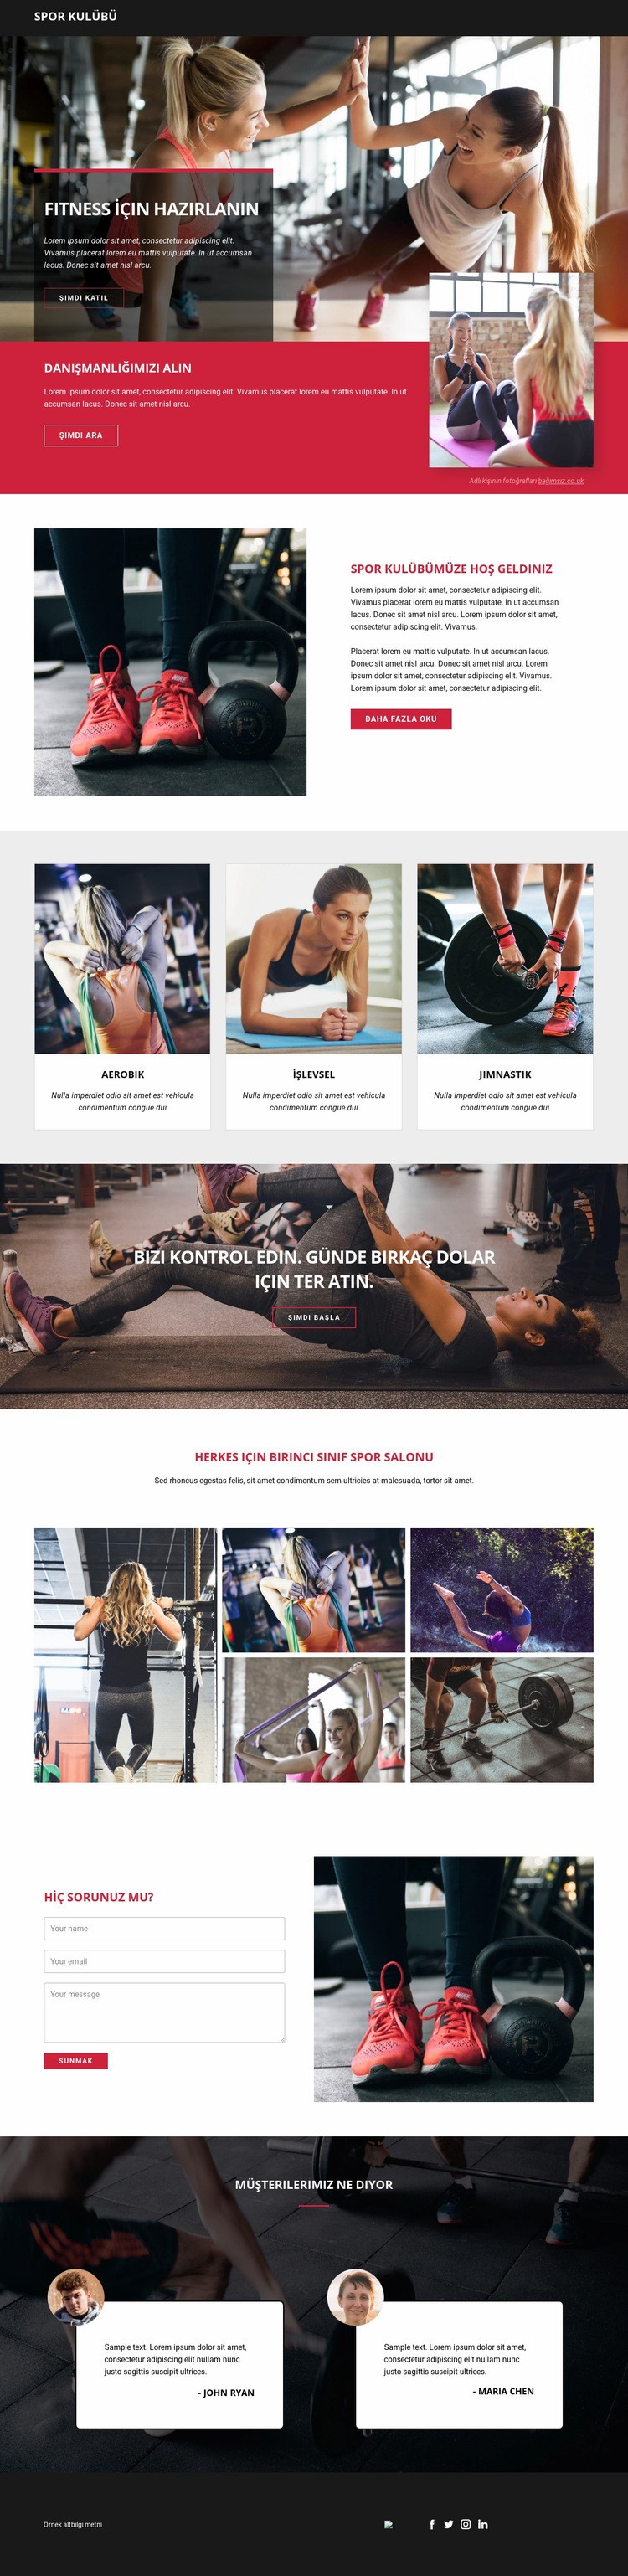 Fitness ve spor için hazır Açılış sayfası